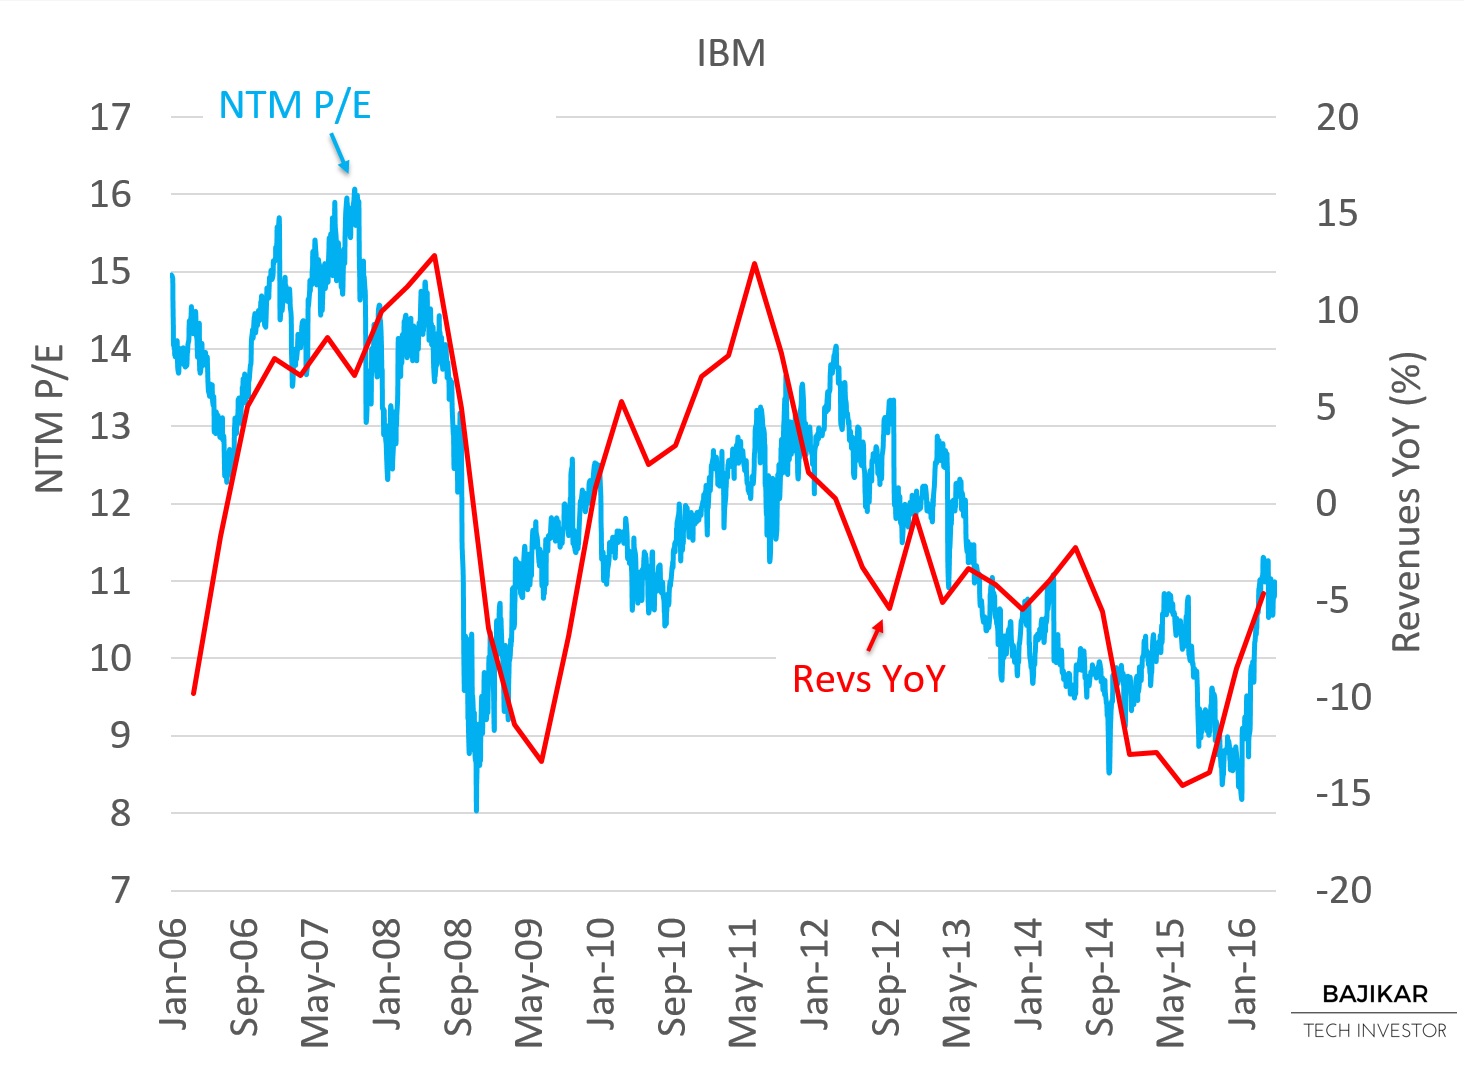 IBM NTM P/E vs. Revenues YoY